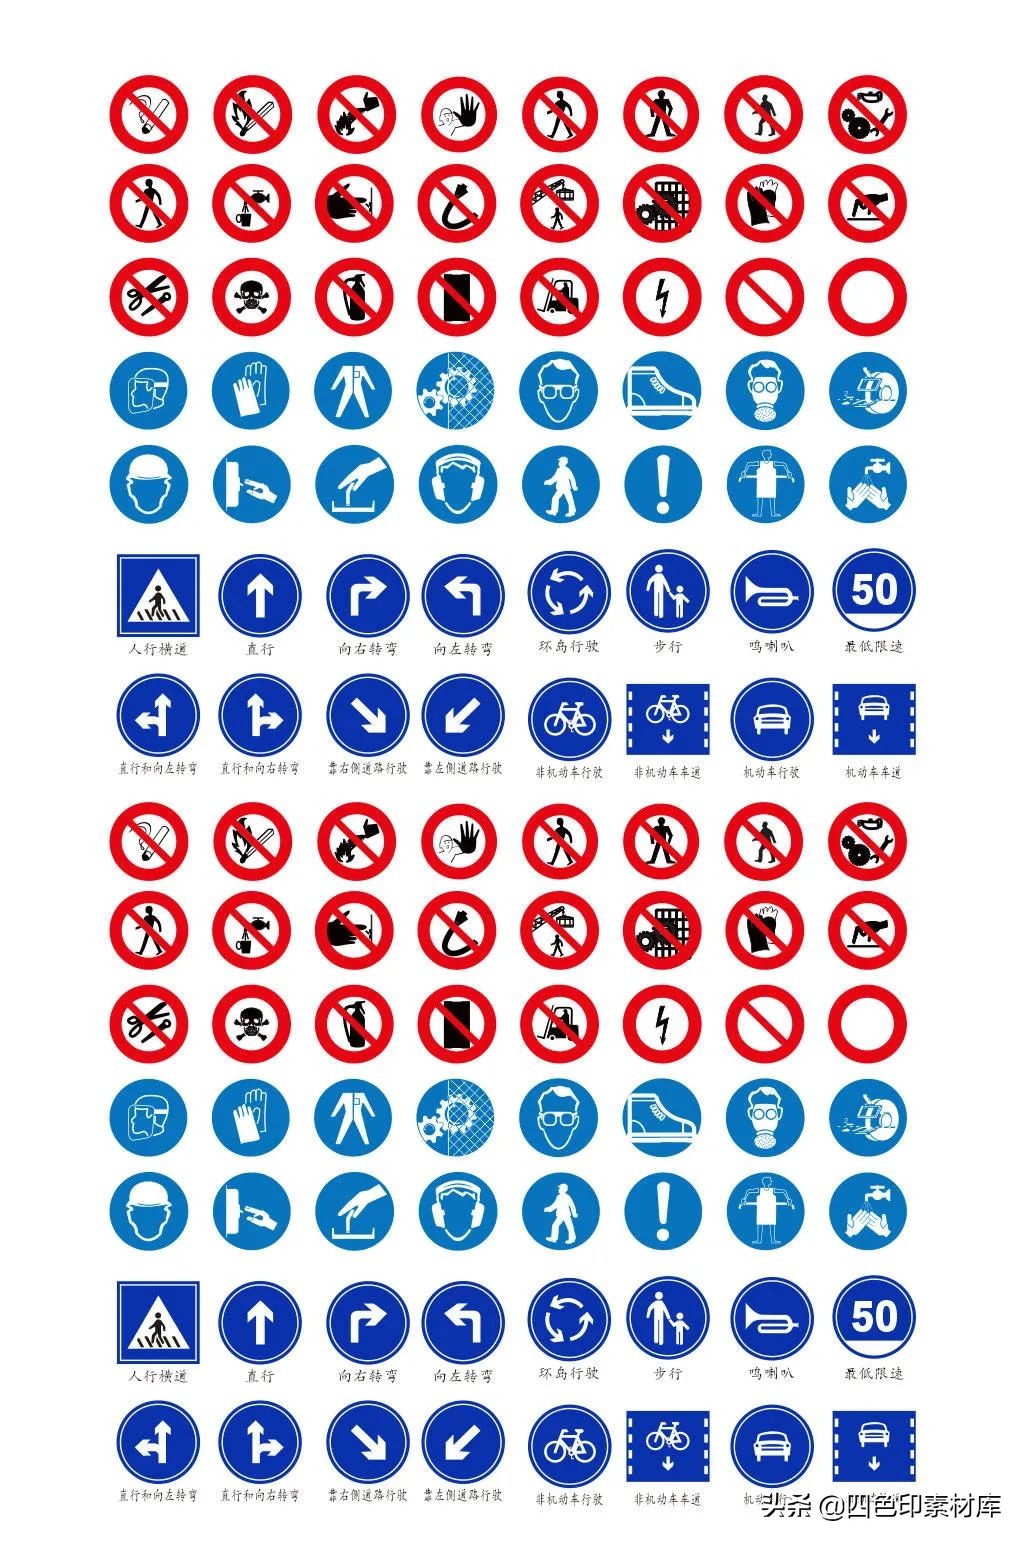 禁止标志图片大全及图解，表示禁止的标志图片有哪些